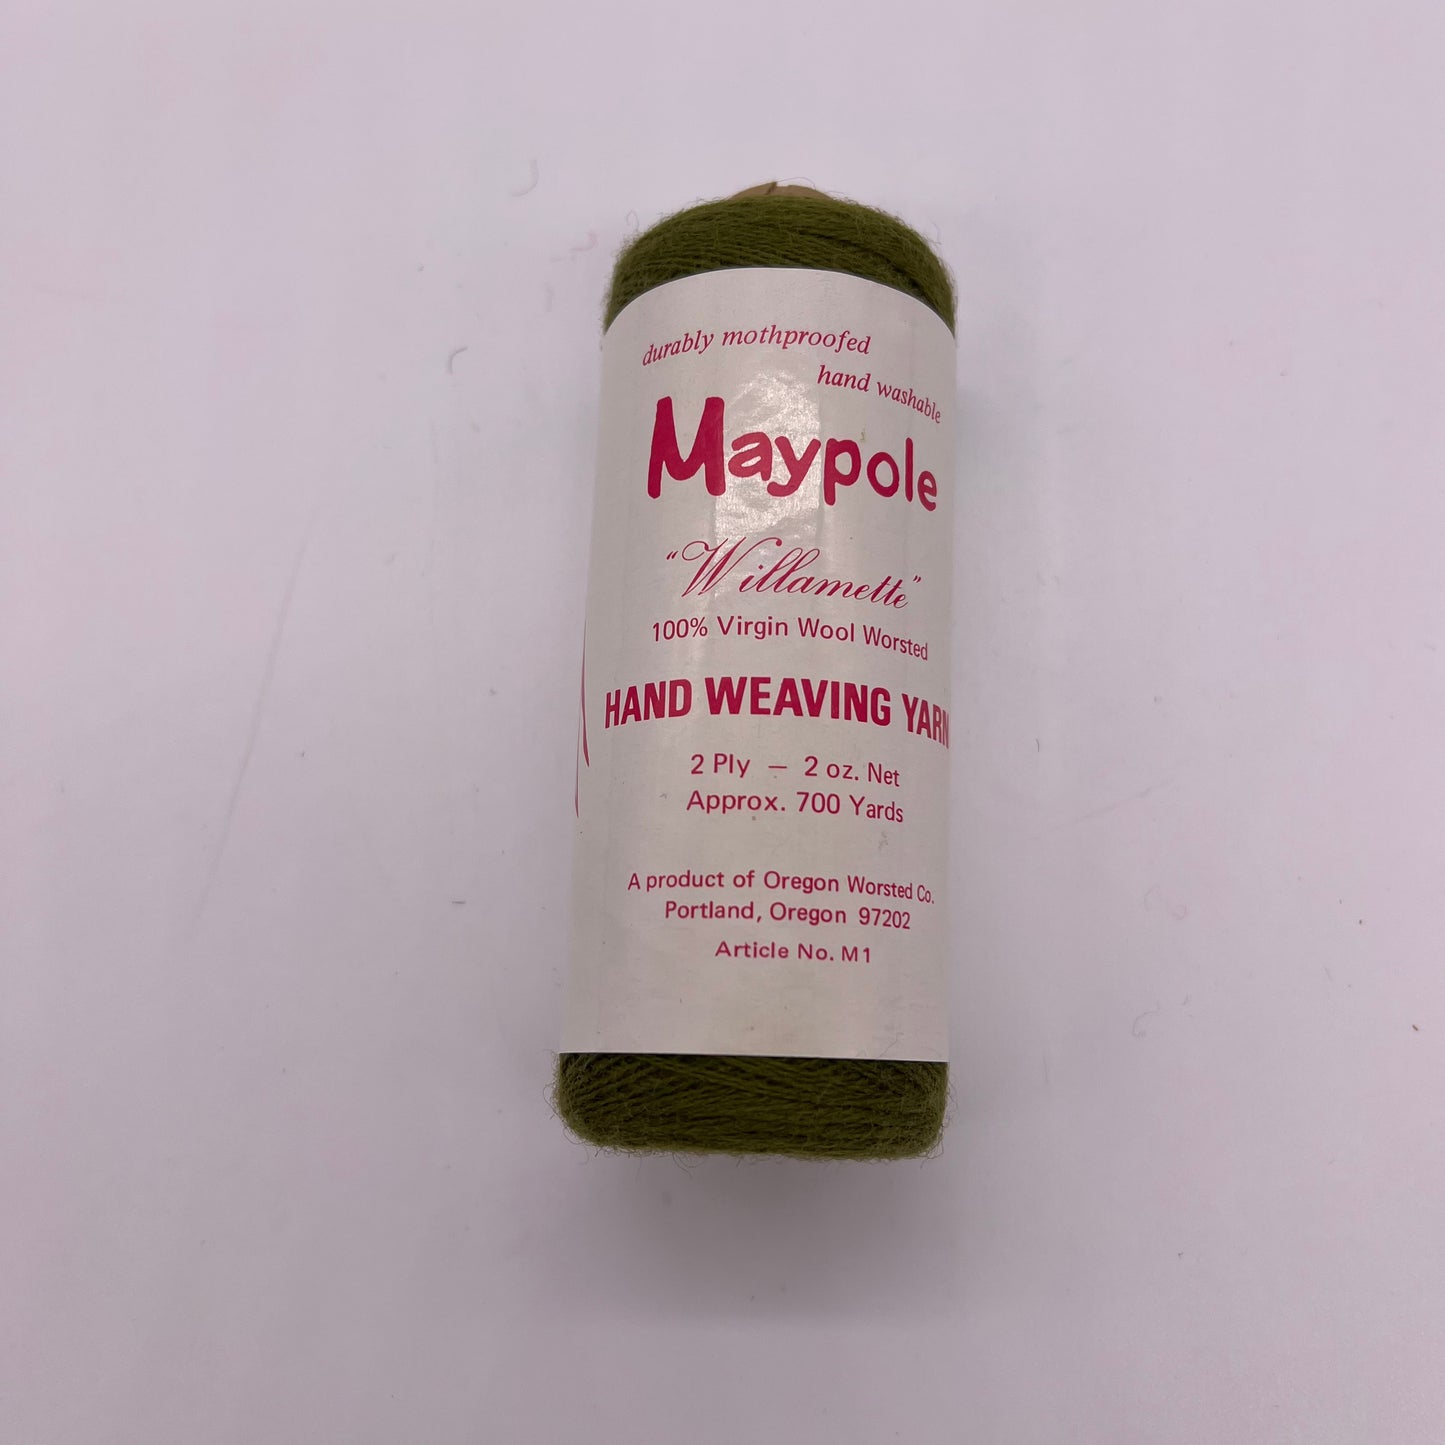 Maypole Willamette Green Yarn